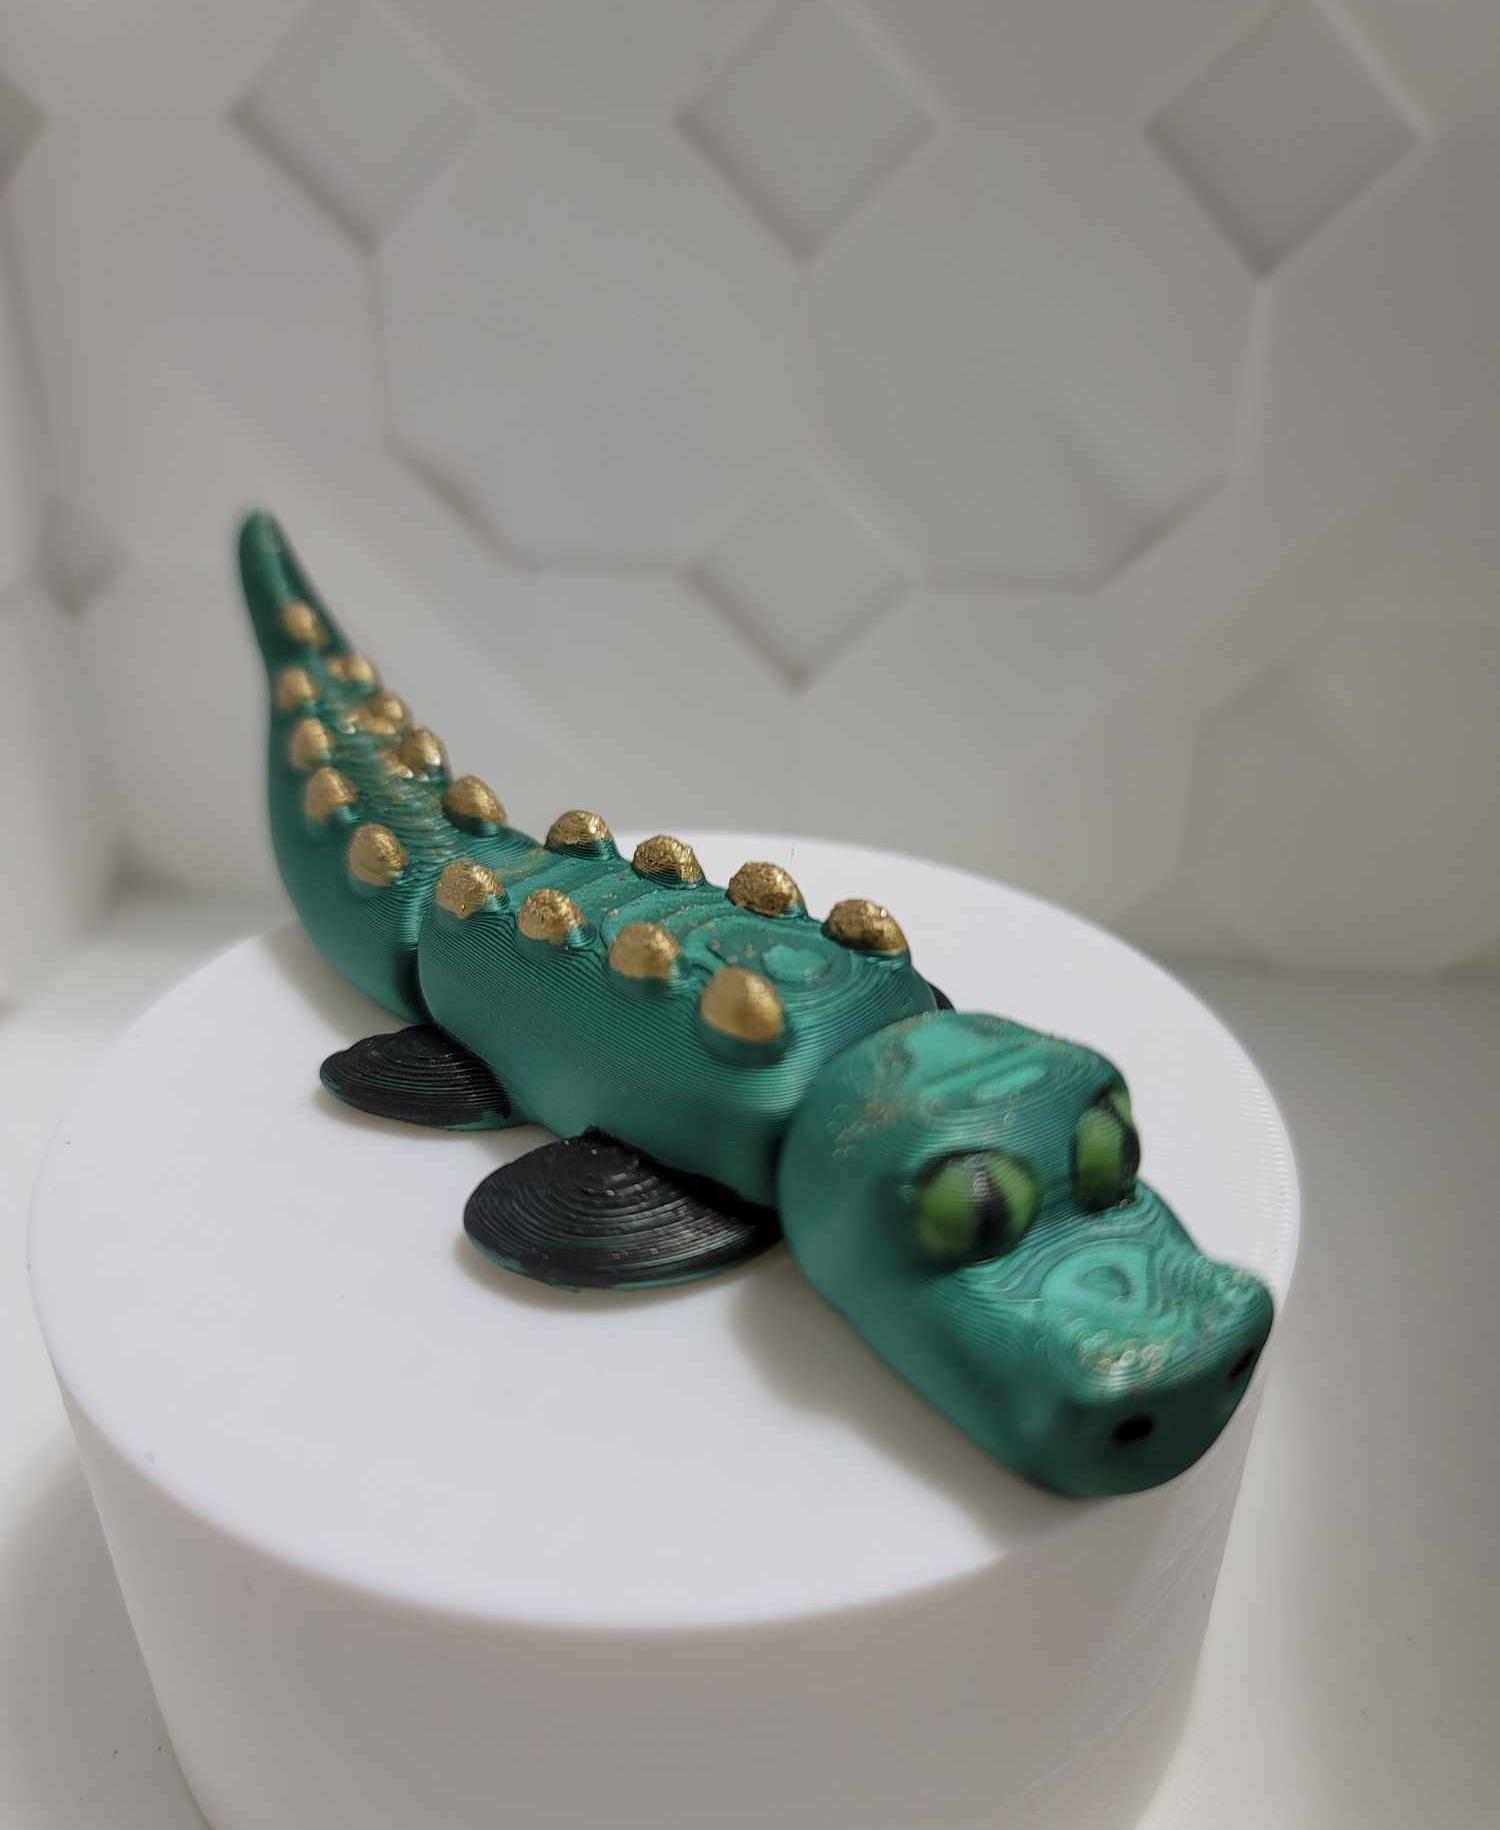 Cute Flexi Crocodile - Cute Flexi Crocodile! - 3d model